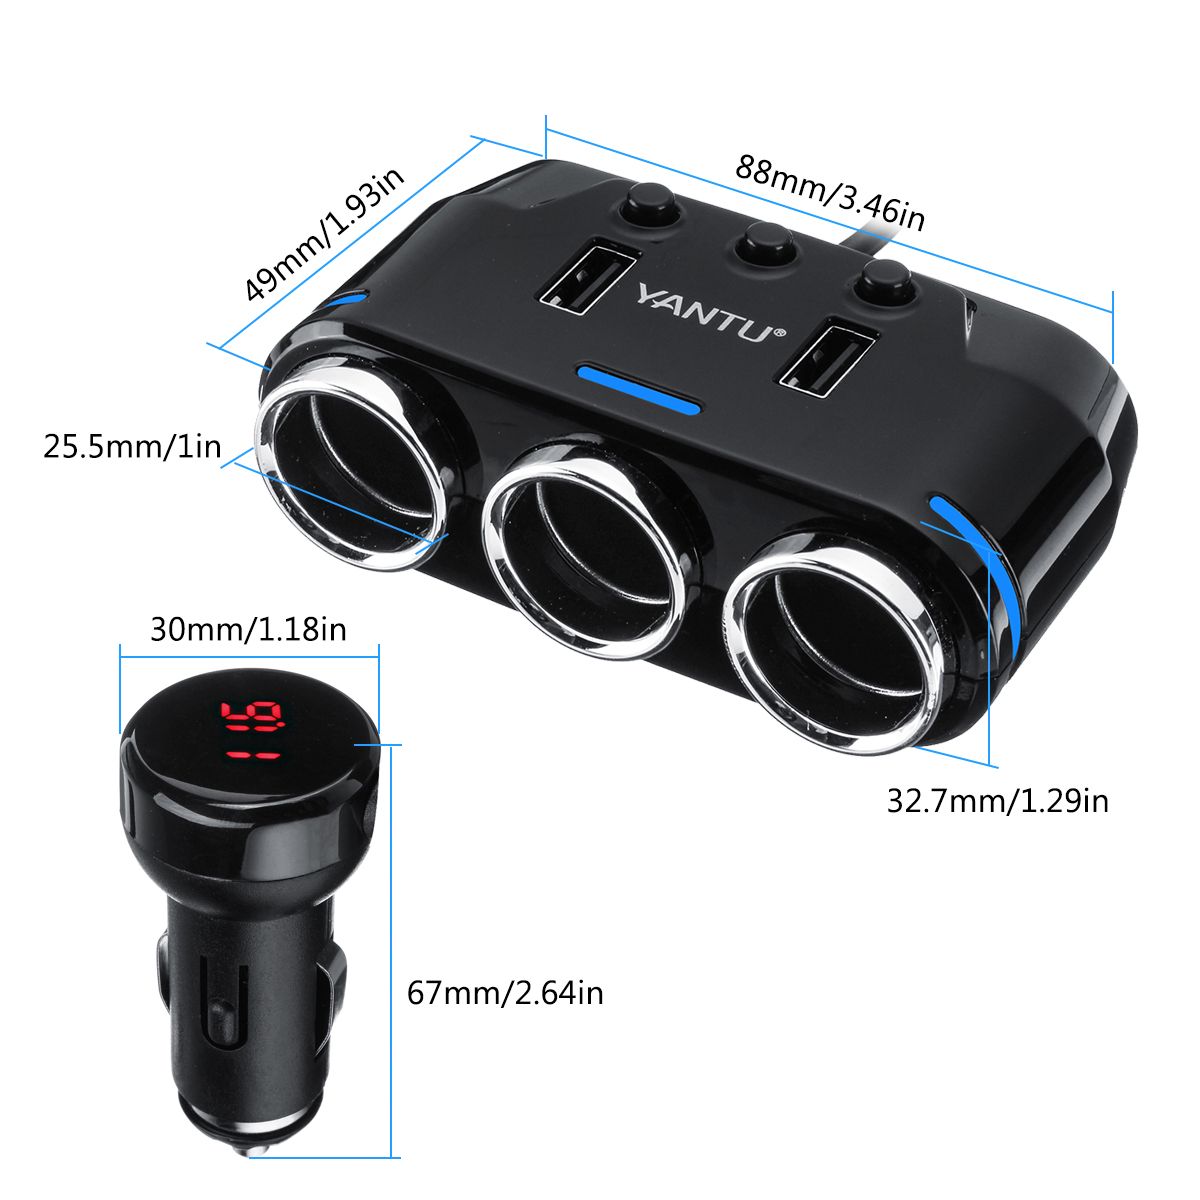 Dual-USB-Port-3-Way-Auto-Car-Cig-arette-Lighter-Socket-Splitter-Charger-DC-12V-Plug-Adapter-1604413